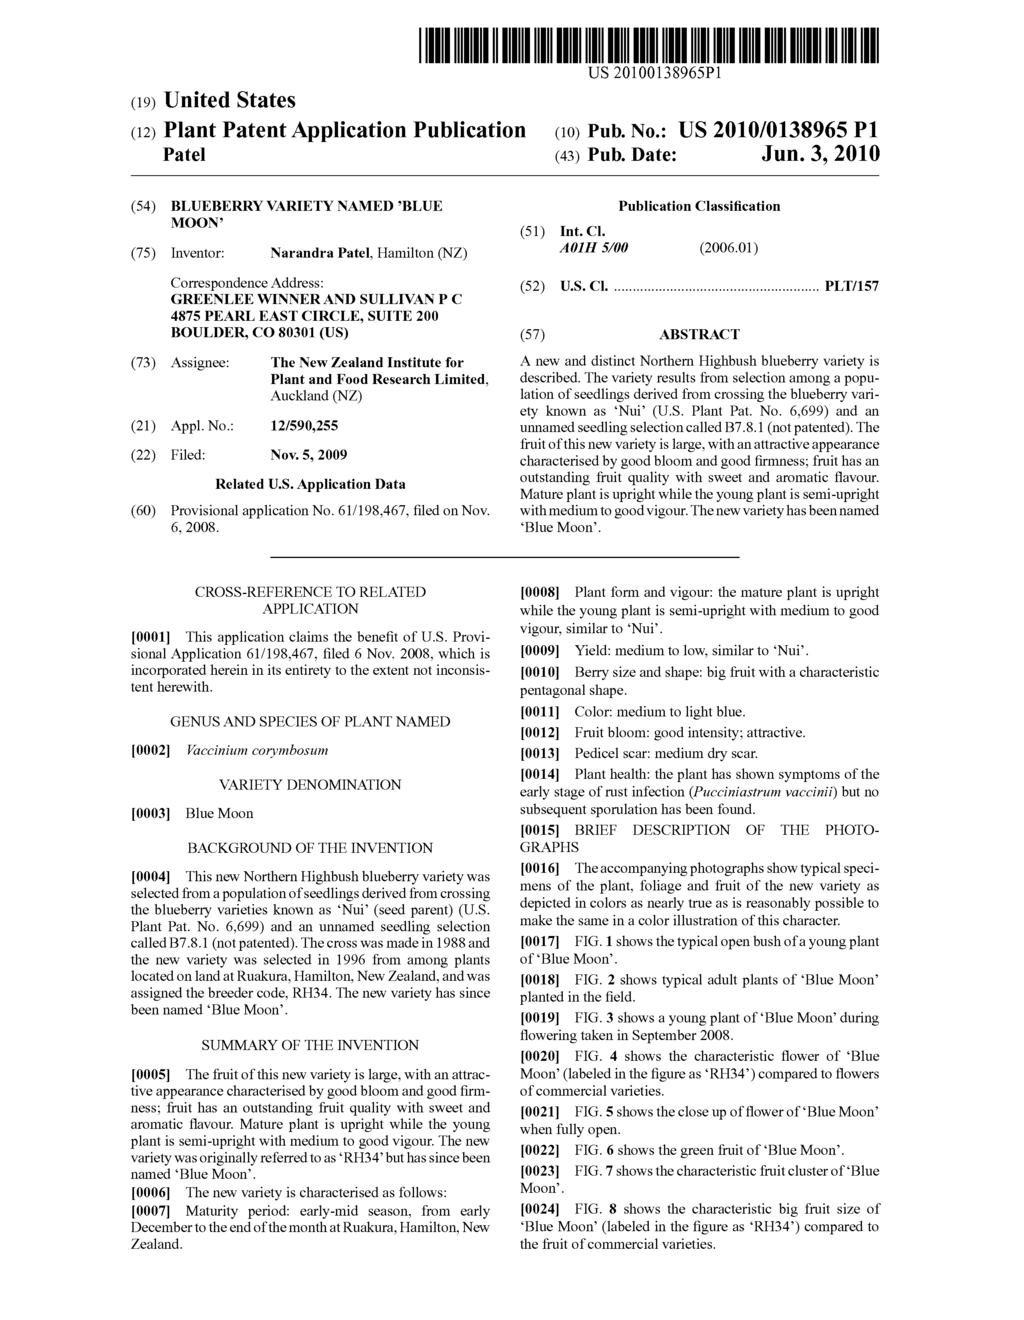 (19) United States (12) Plant Patent Application Publication Pate US 201001.38965P1 (10) Pub. No.: US 2010/0138965 P1 (43) Pub. Date: Jun.